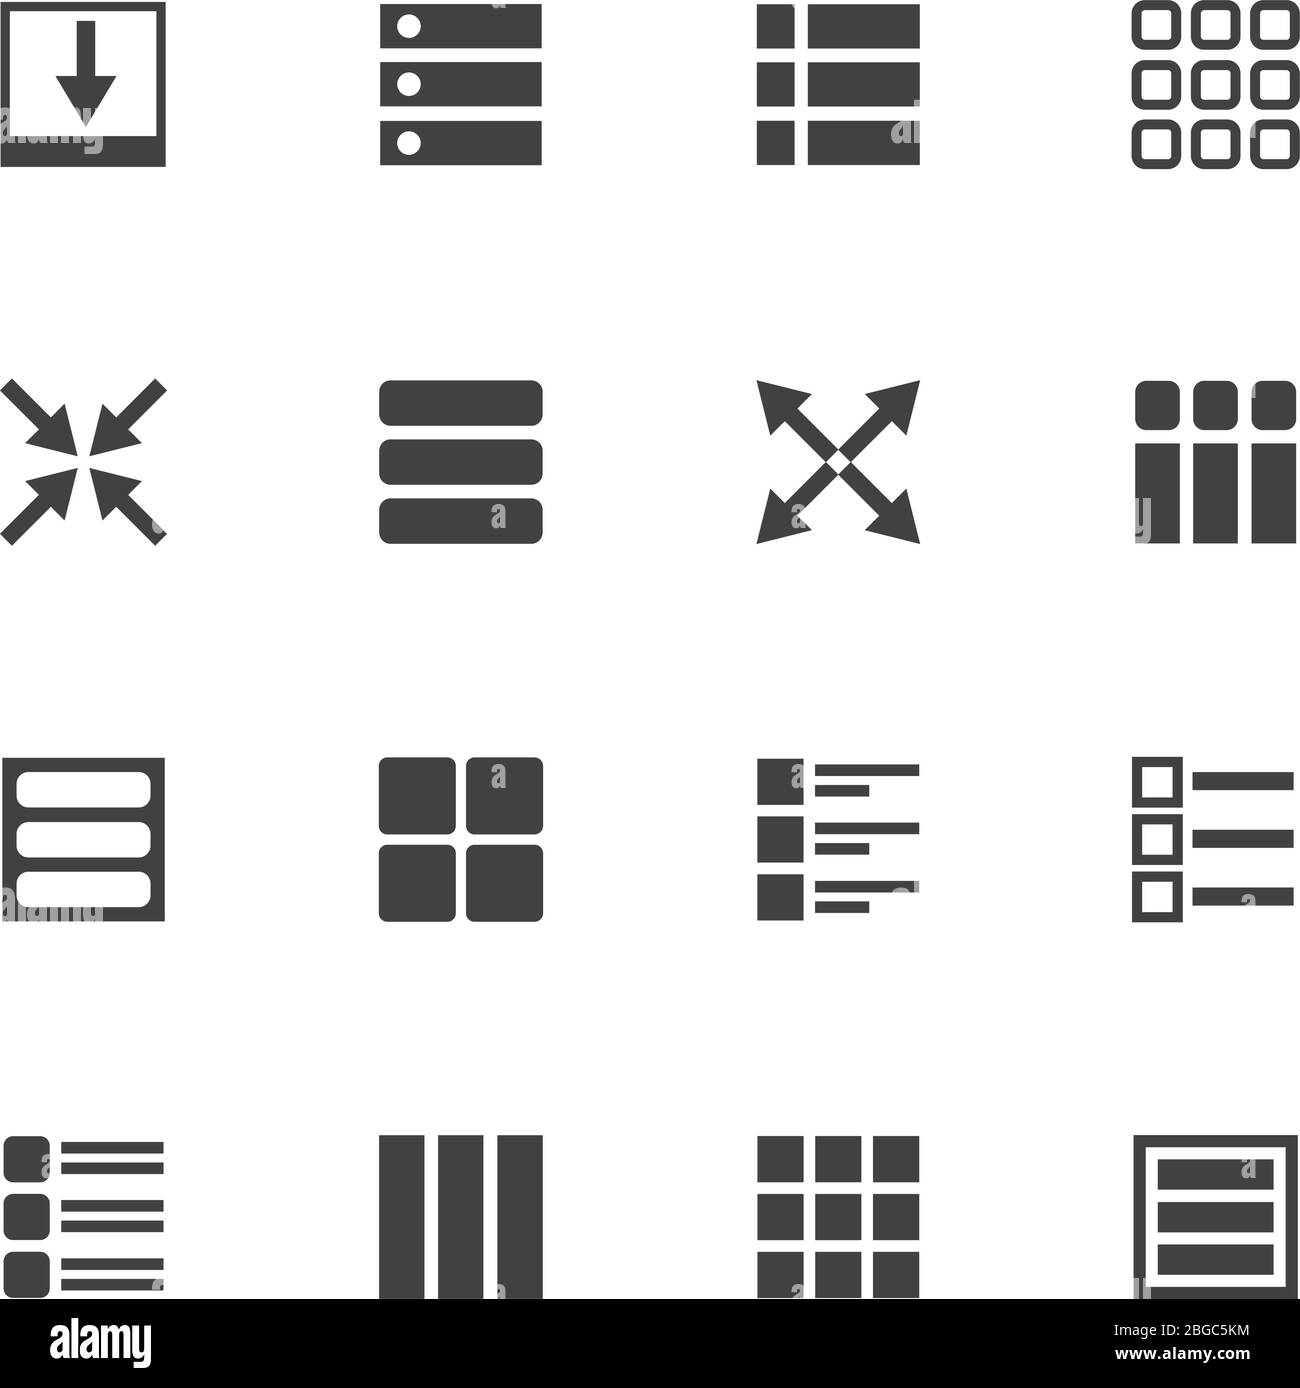 Icone dei vettori di navigazione del menu UI e dell'interfaccia utente. Navigazione utente per l'interfaccia dei menu, illustrazione del controllo dei pulsanti Web Illustrazione Vettoriale